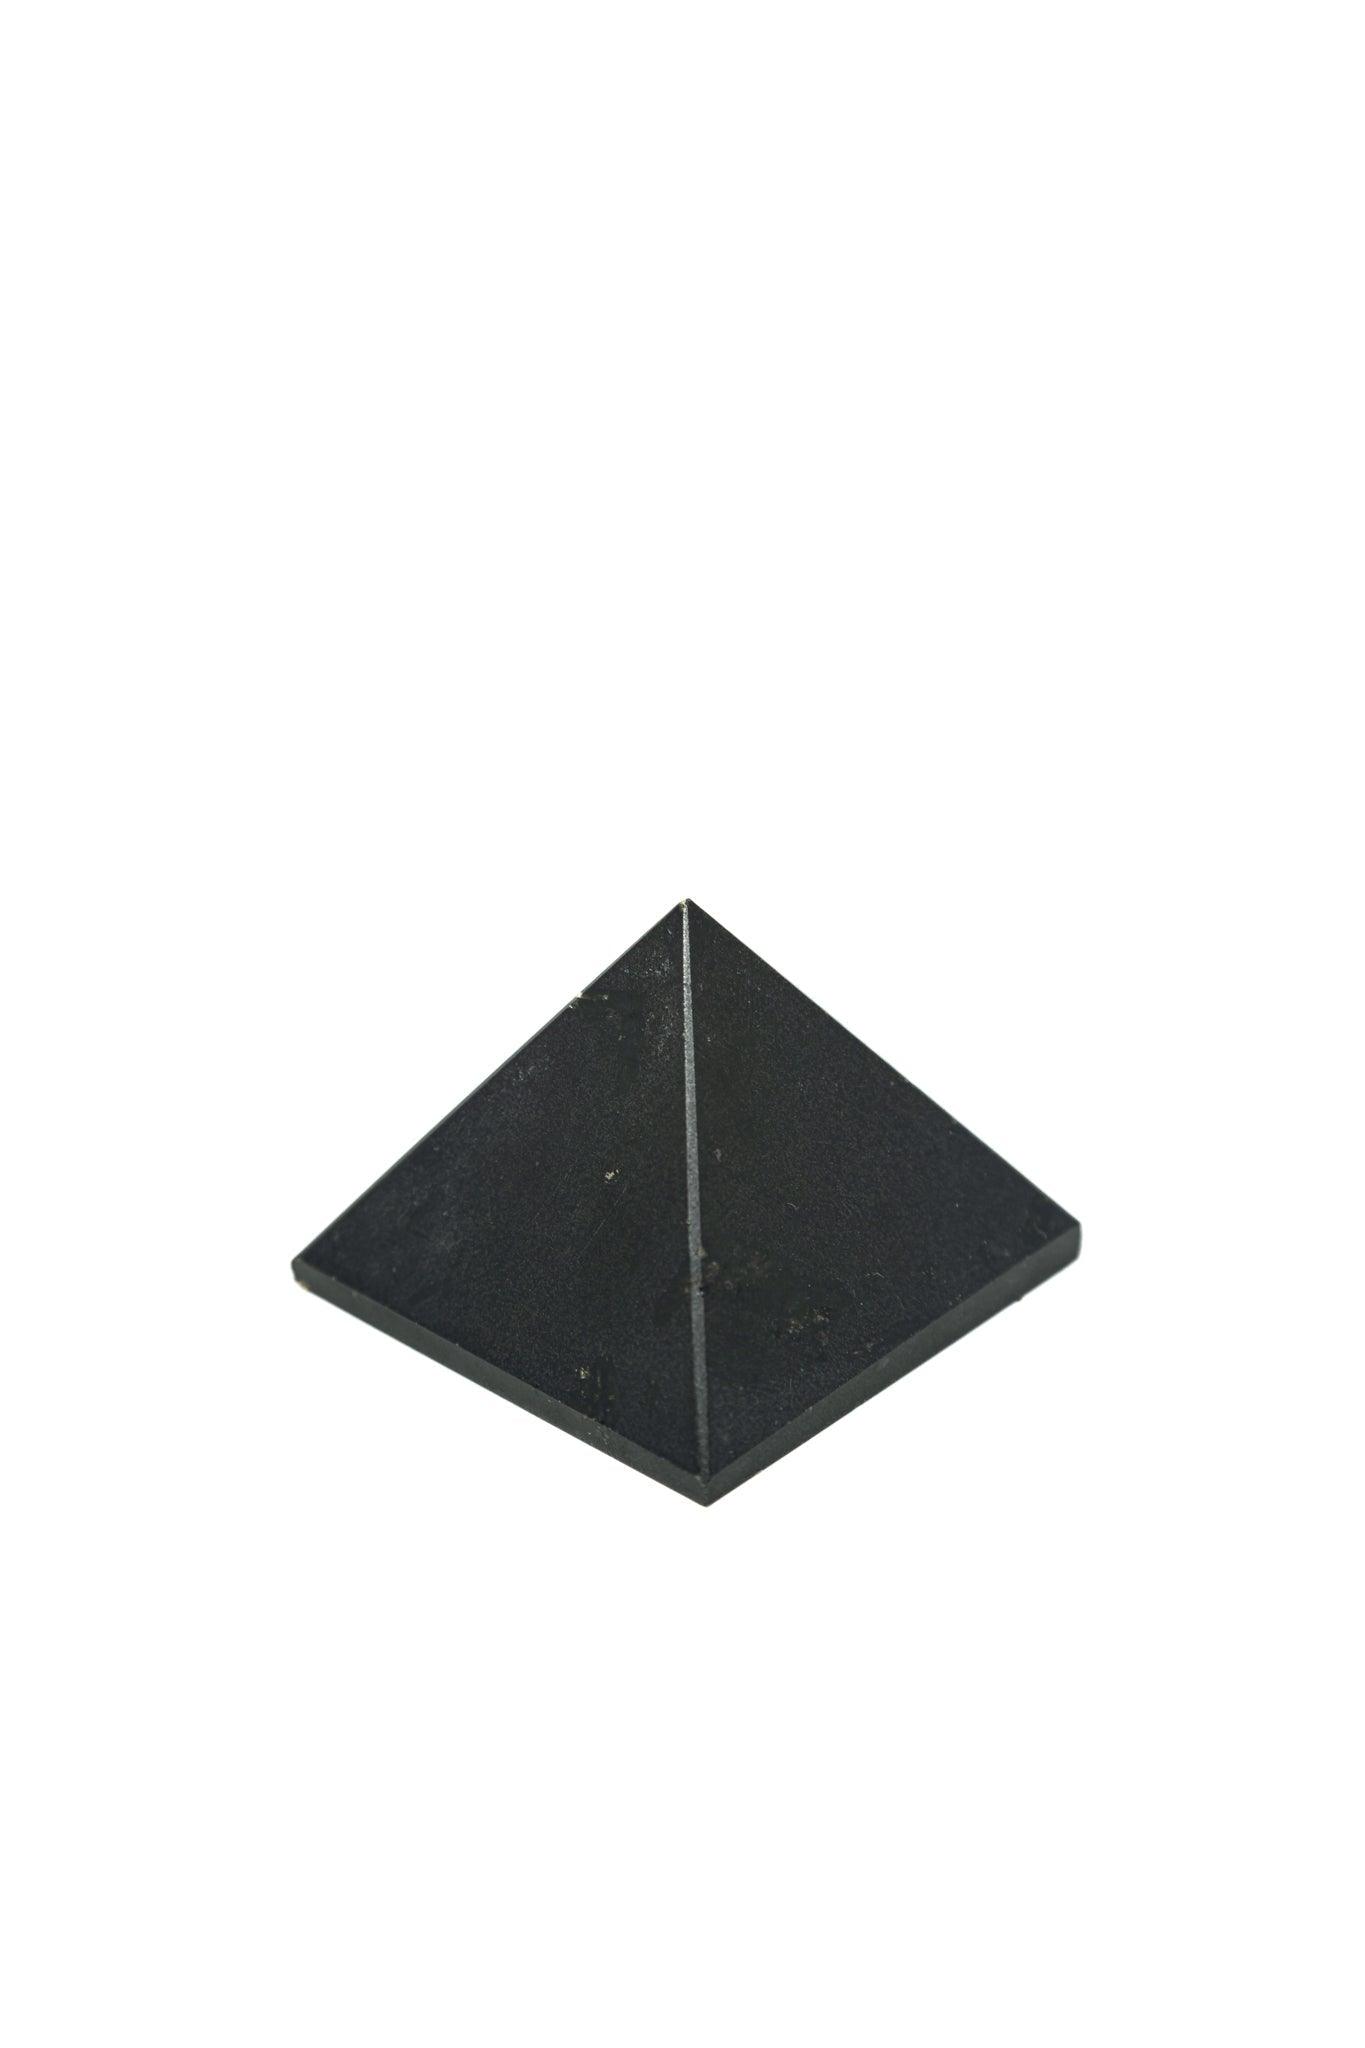 Black Tourmaline Pyramid Black Tourmaline